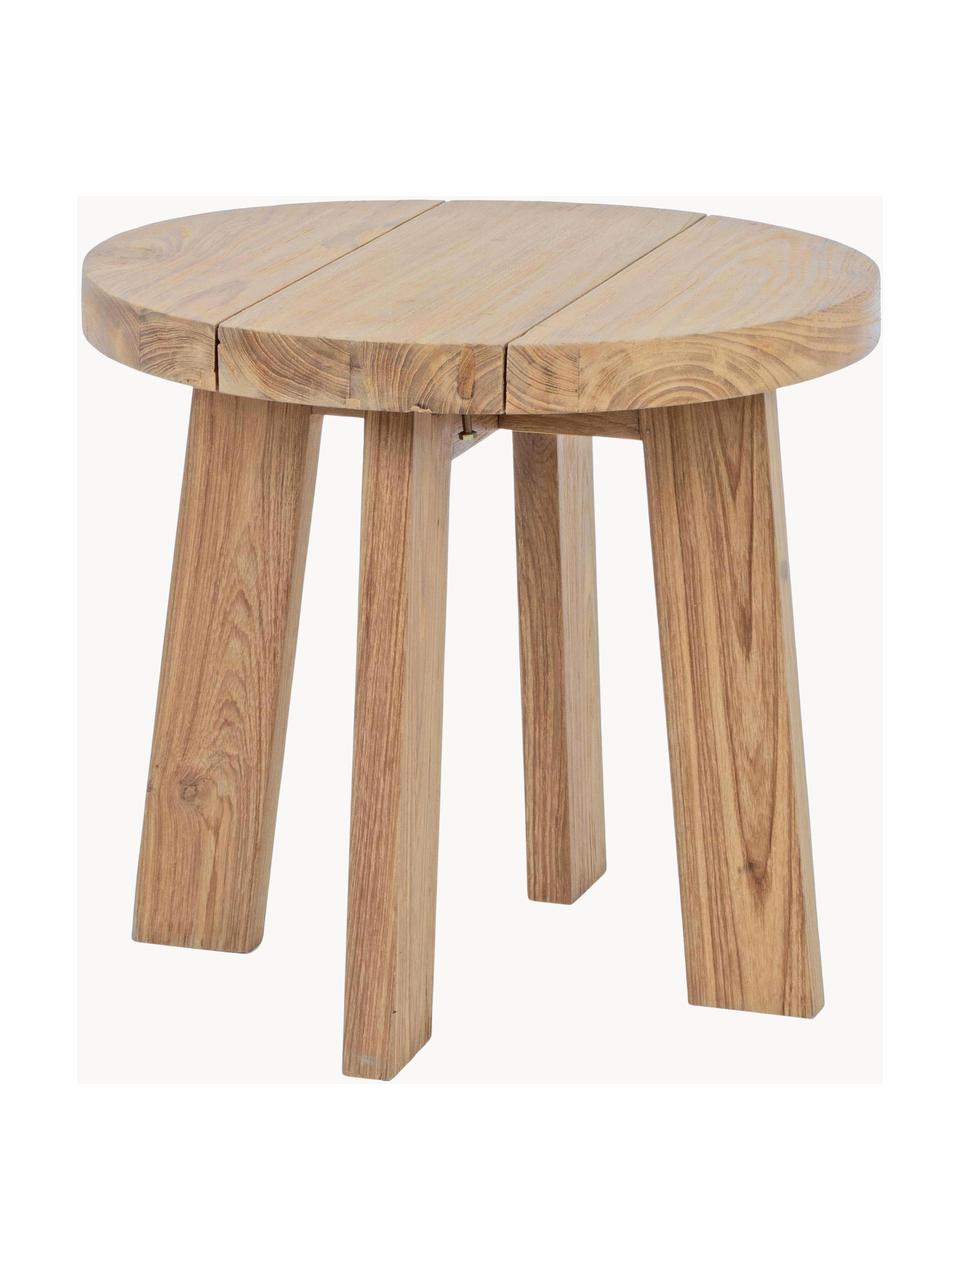 Ogrodowy stolik kawowy z drewna tekowe Bolivar, Drewno tekowe, jasne, lakierowane, Drewno tekowe, Ø 50 x W 45 cm